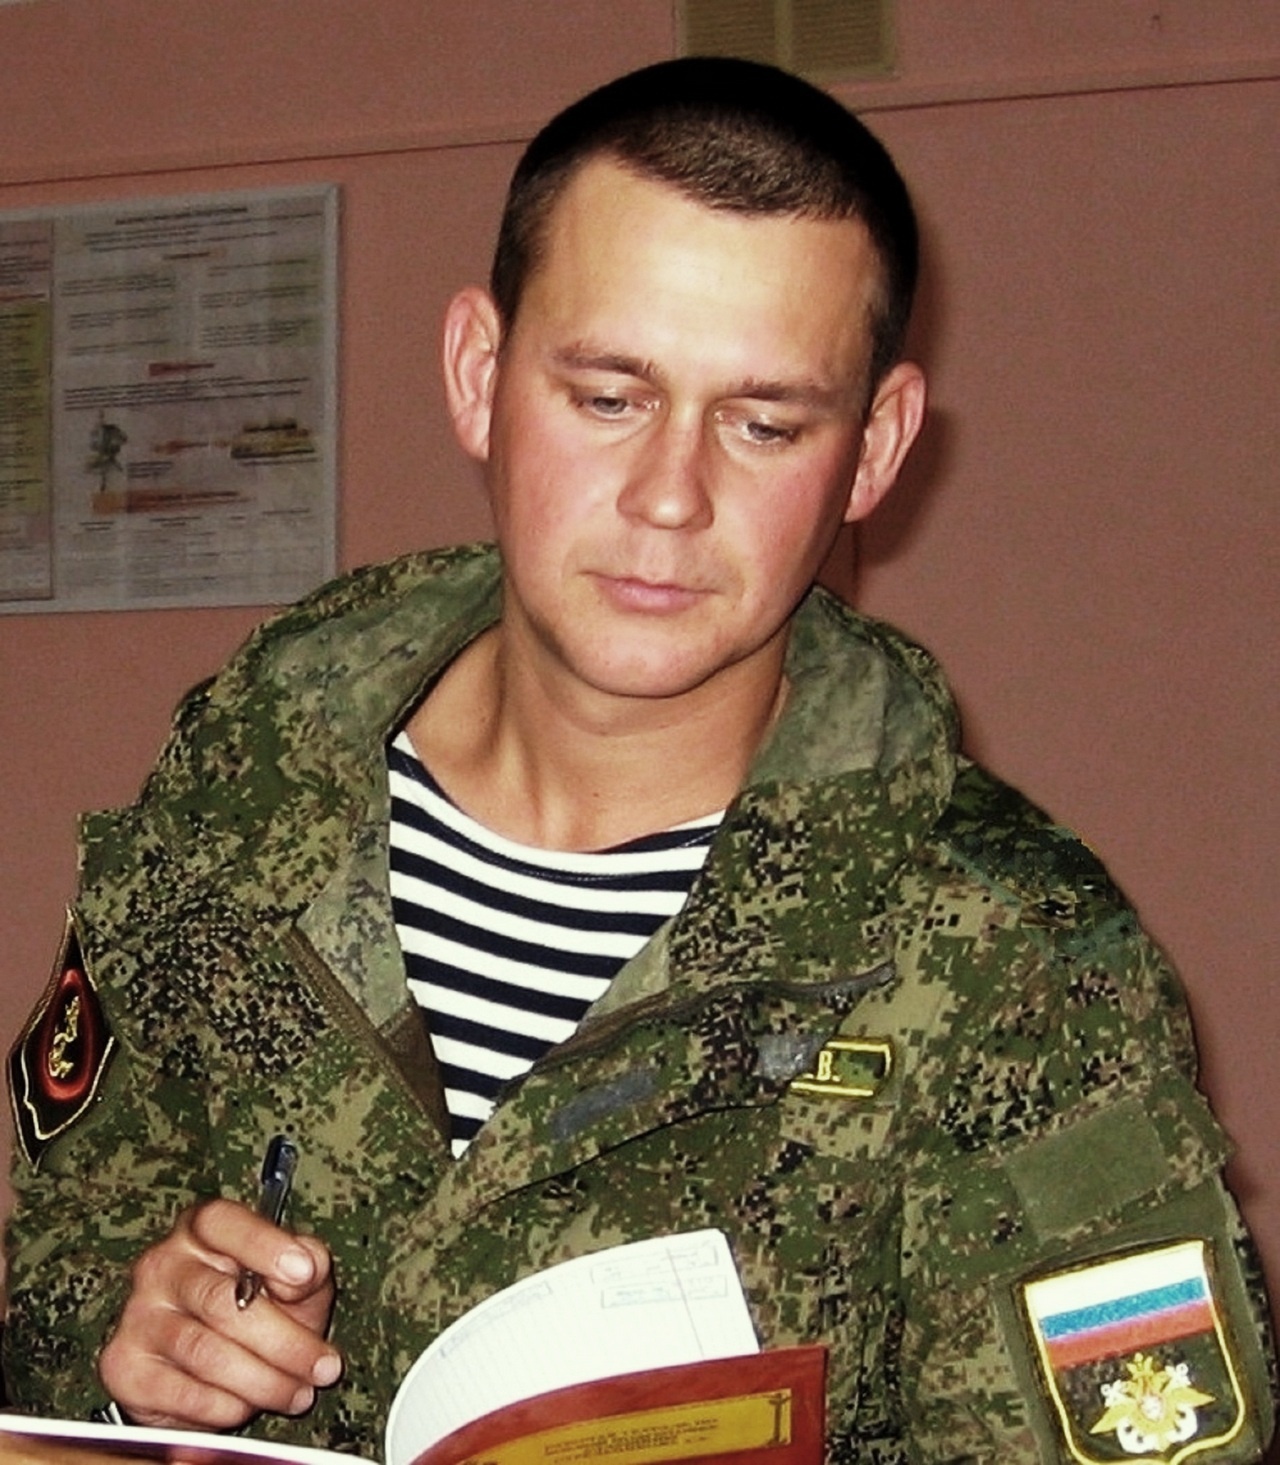 Опыт и новые знания - слагаемые военной профессии, считает старший лейтенант Максим Жаров.